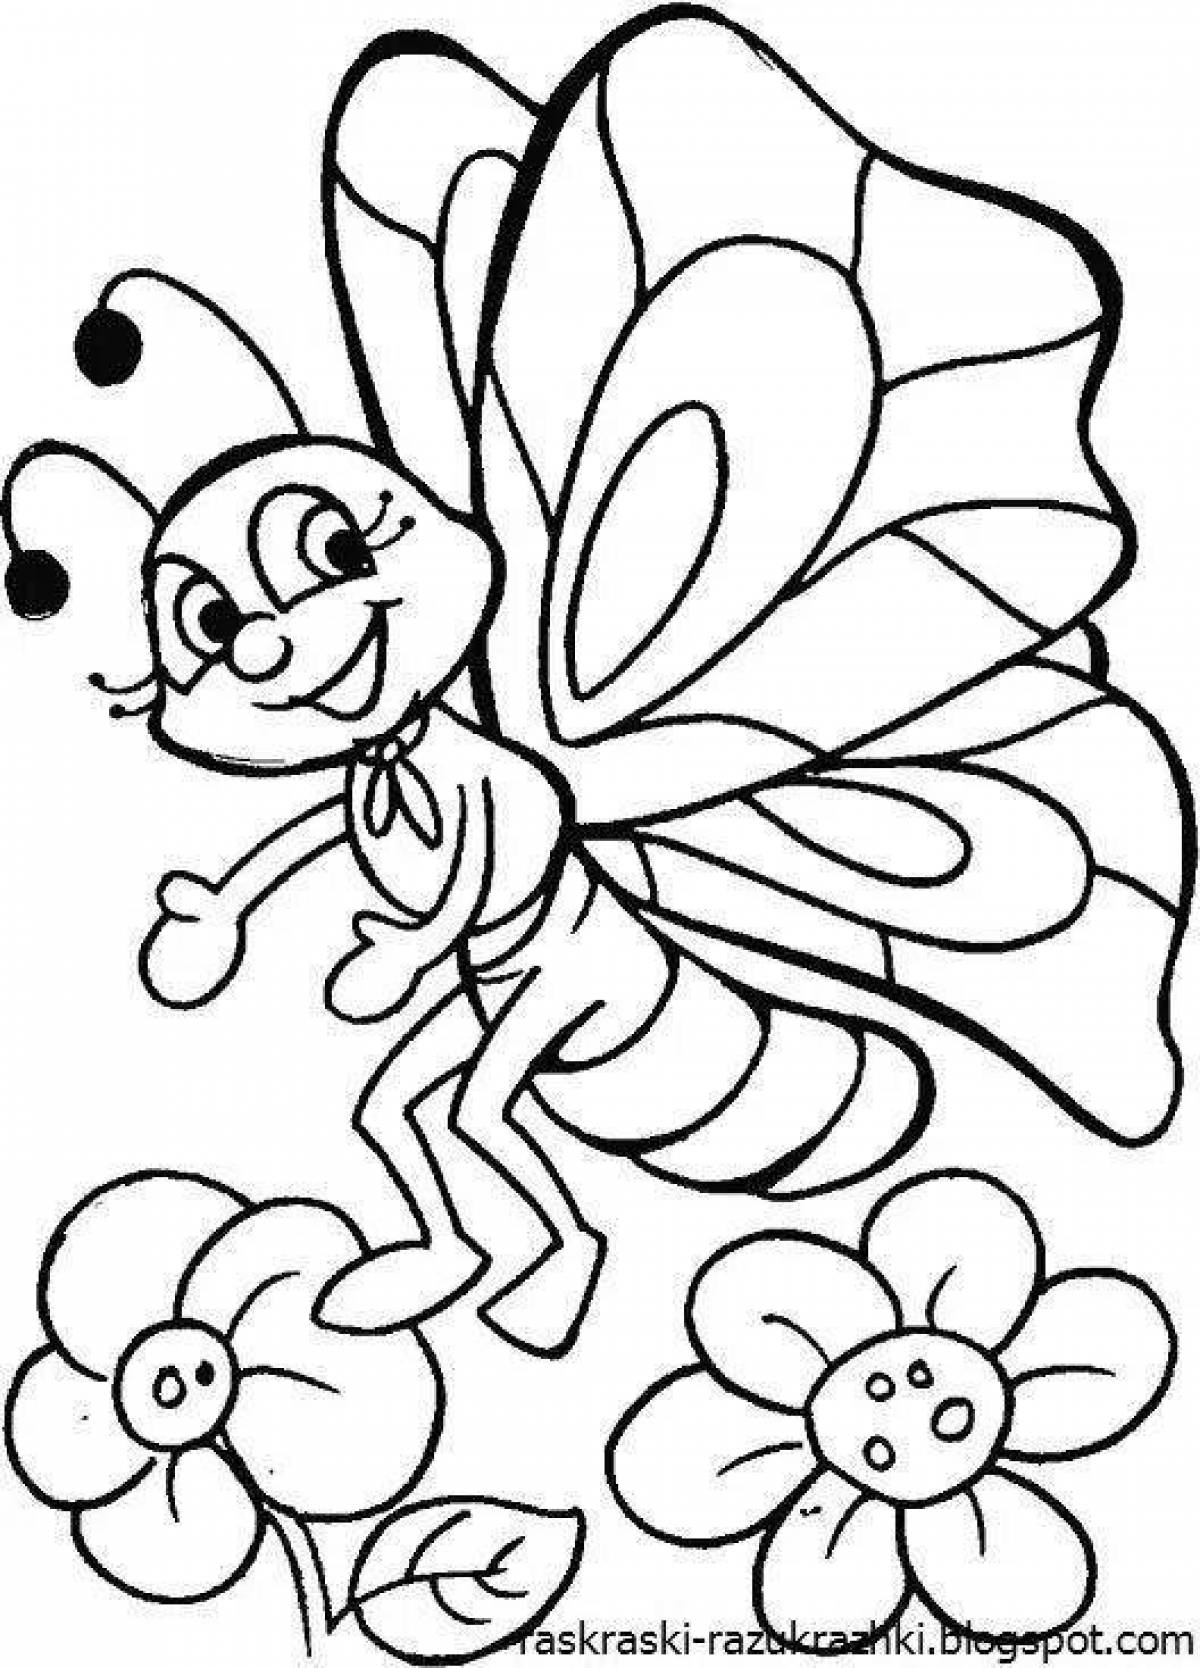 Распечатать раскраску насекомые. Бабочка раскраска для детей. Раскраски длядля детей. Раскраски насекомые для детей 4-5 лет. Раскраска насекомые для малышей.